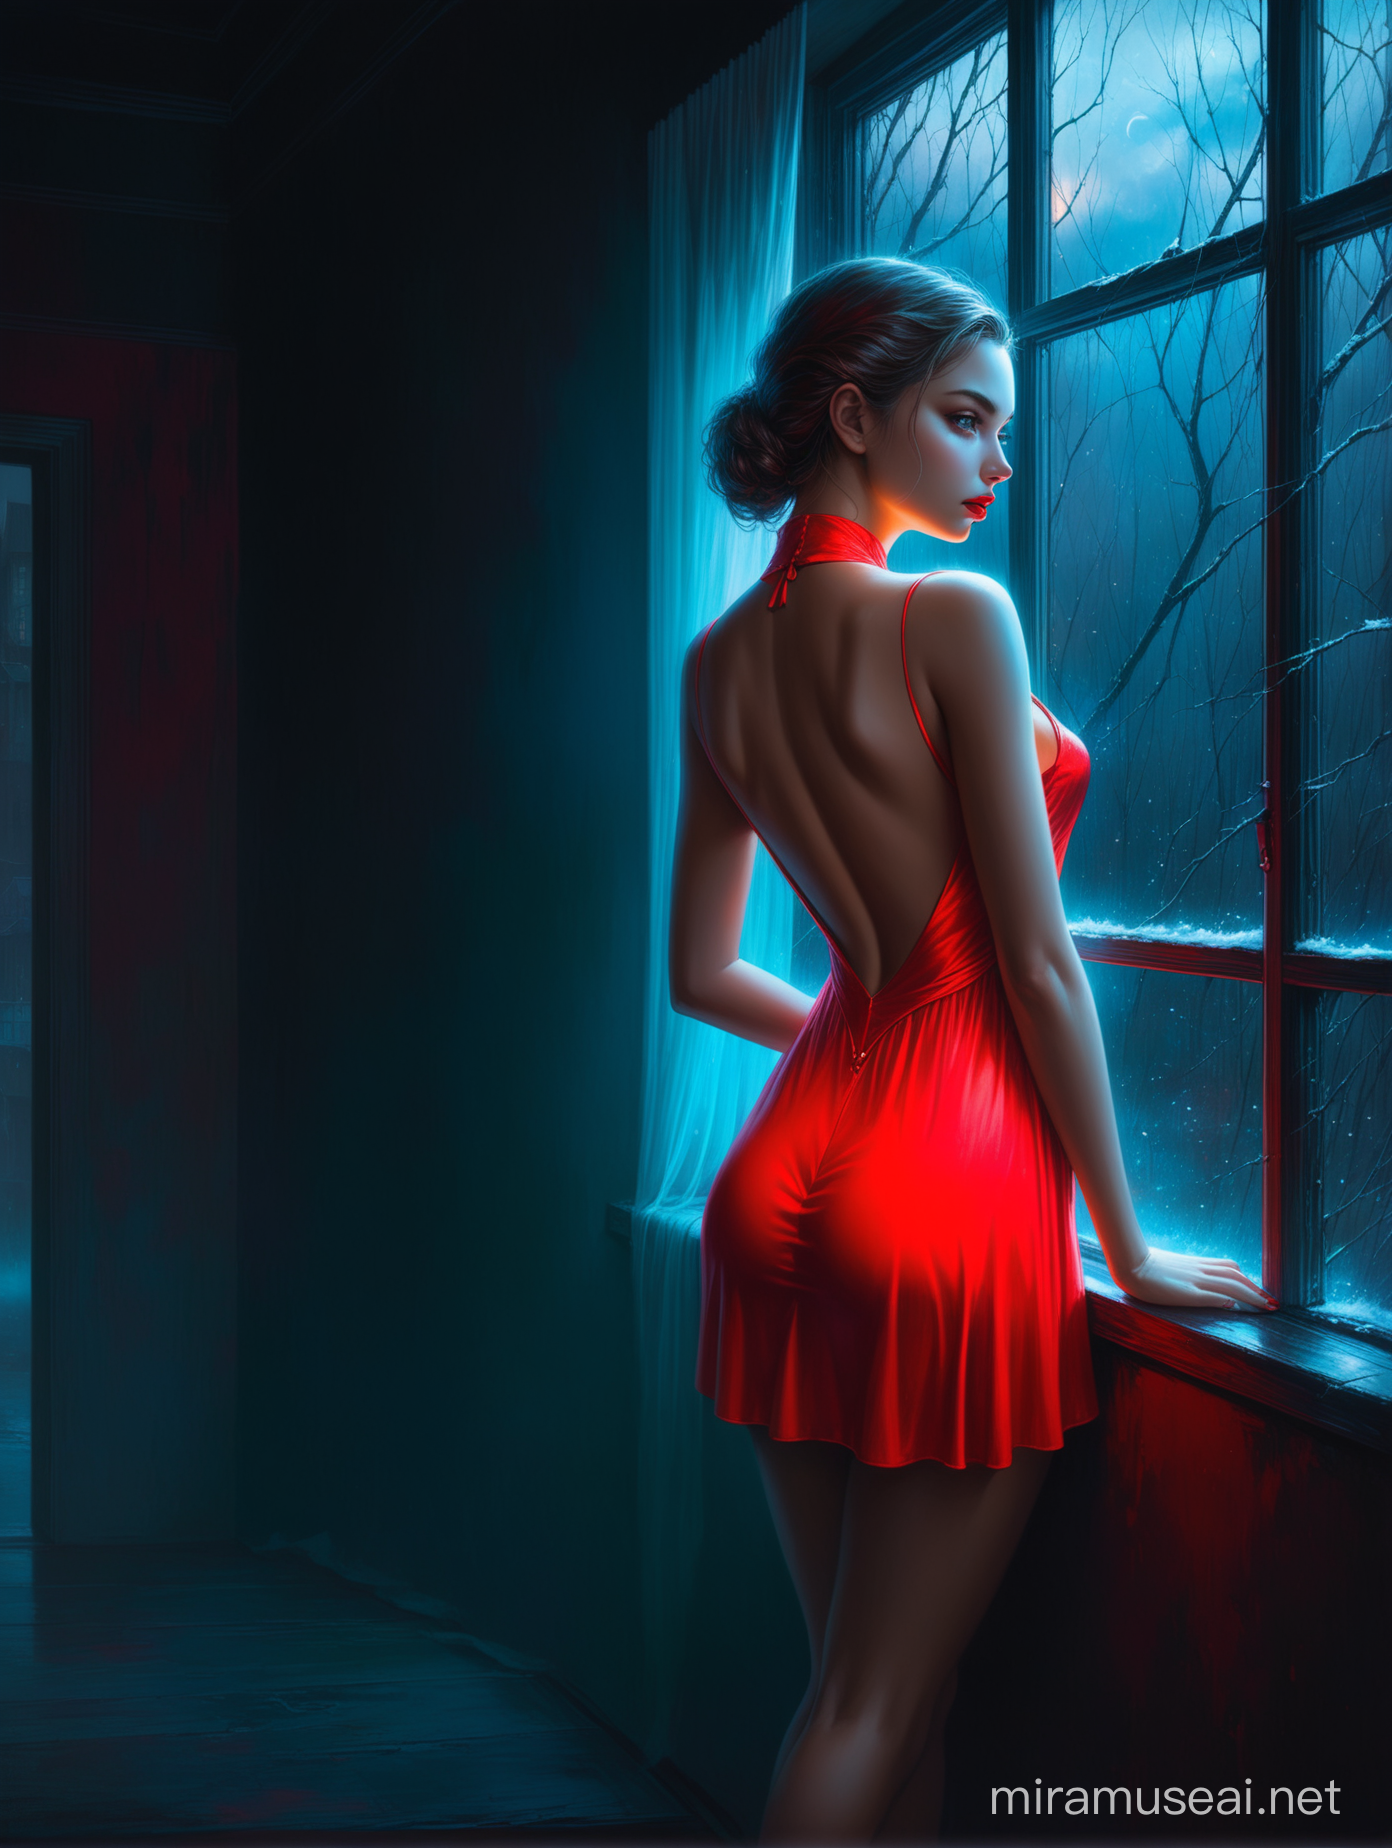 Glamorous Woman in Red Fur Dress Gazes Out Window in Neonlit Fantasy Scene